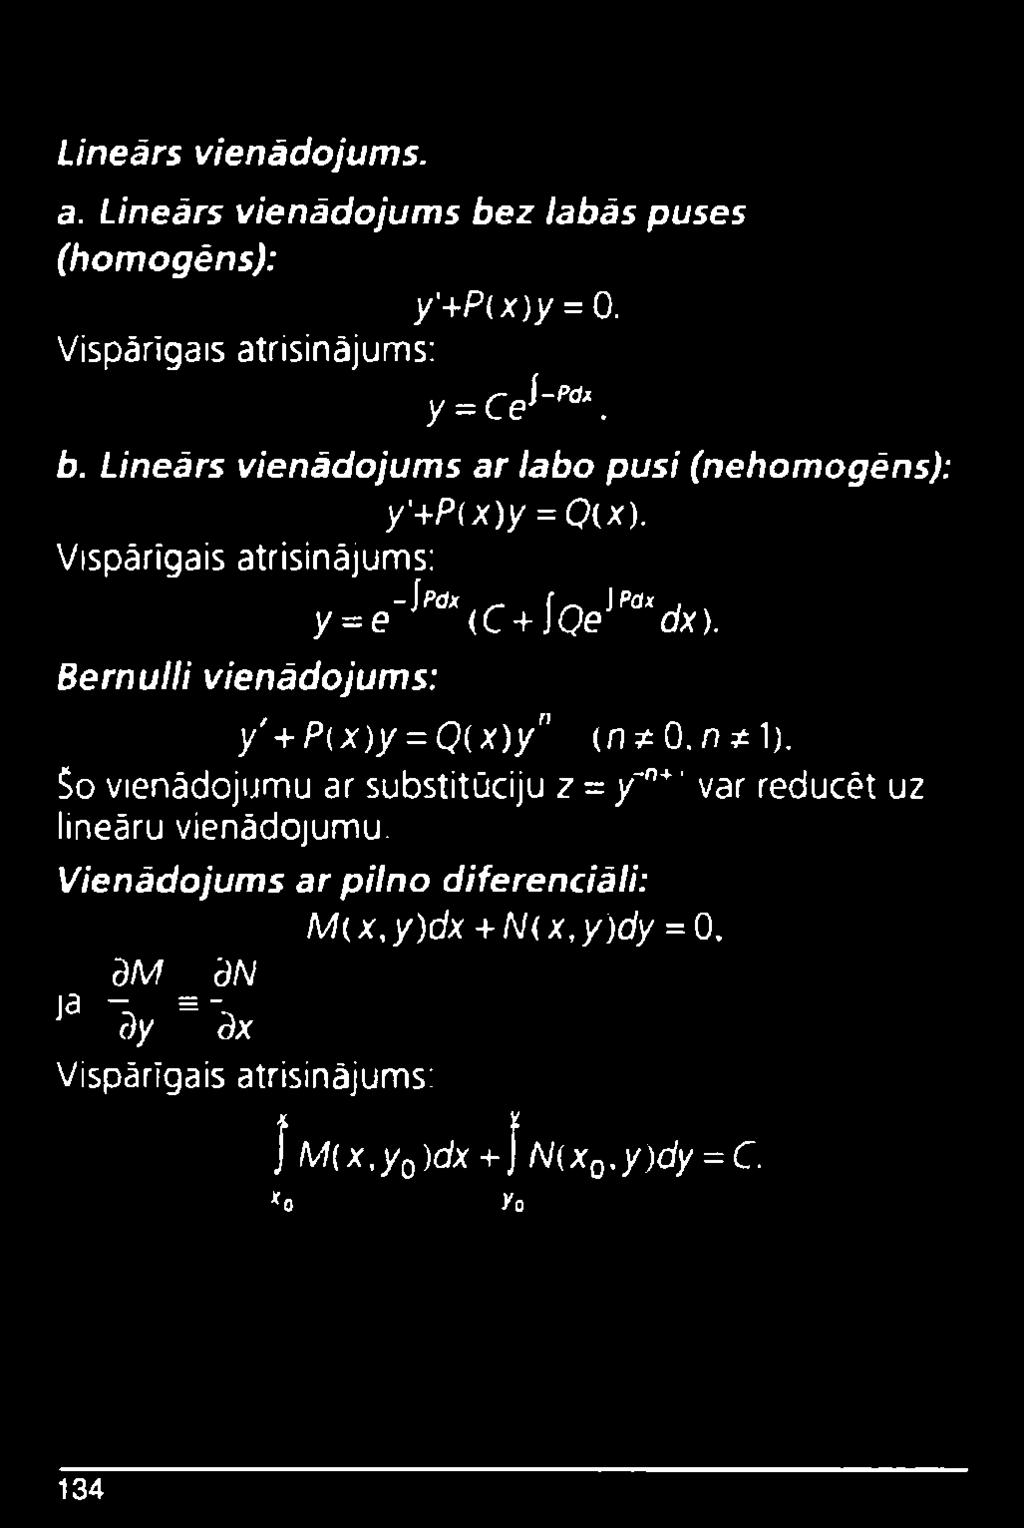 Šo vienādojumu ar substitūciju z = y~n* ' var reducēt uz lineāru vienādojumu.